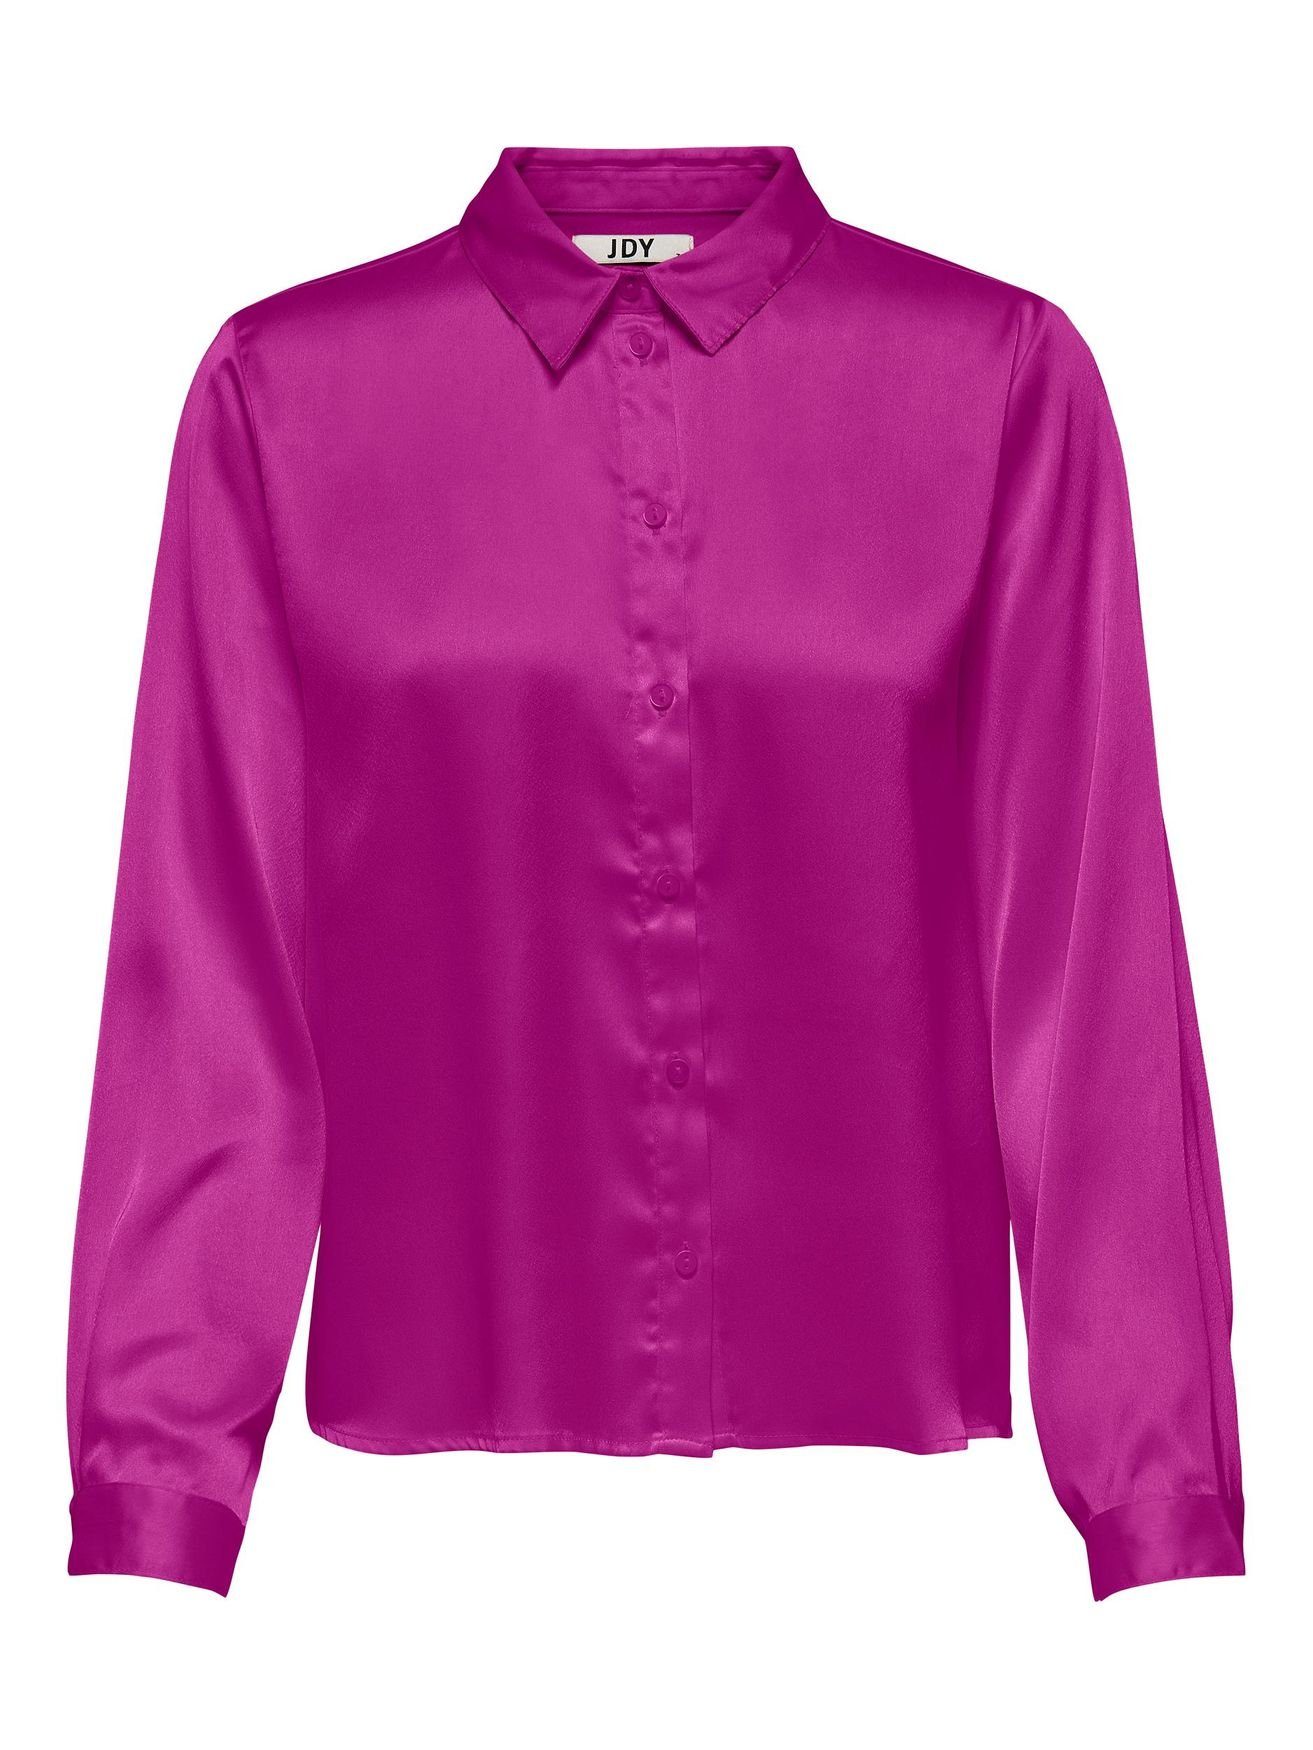 JACQUELINE de Hemd Tunika Langarm Business Lila YONG Blusenshirt 4470 Bluse JDYFIFI Satin in Elegante